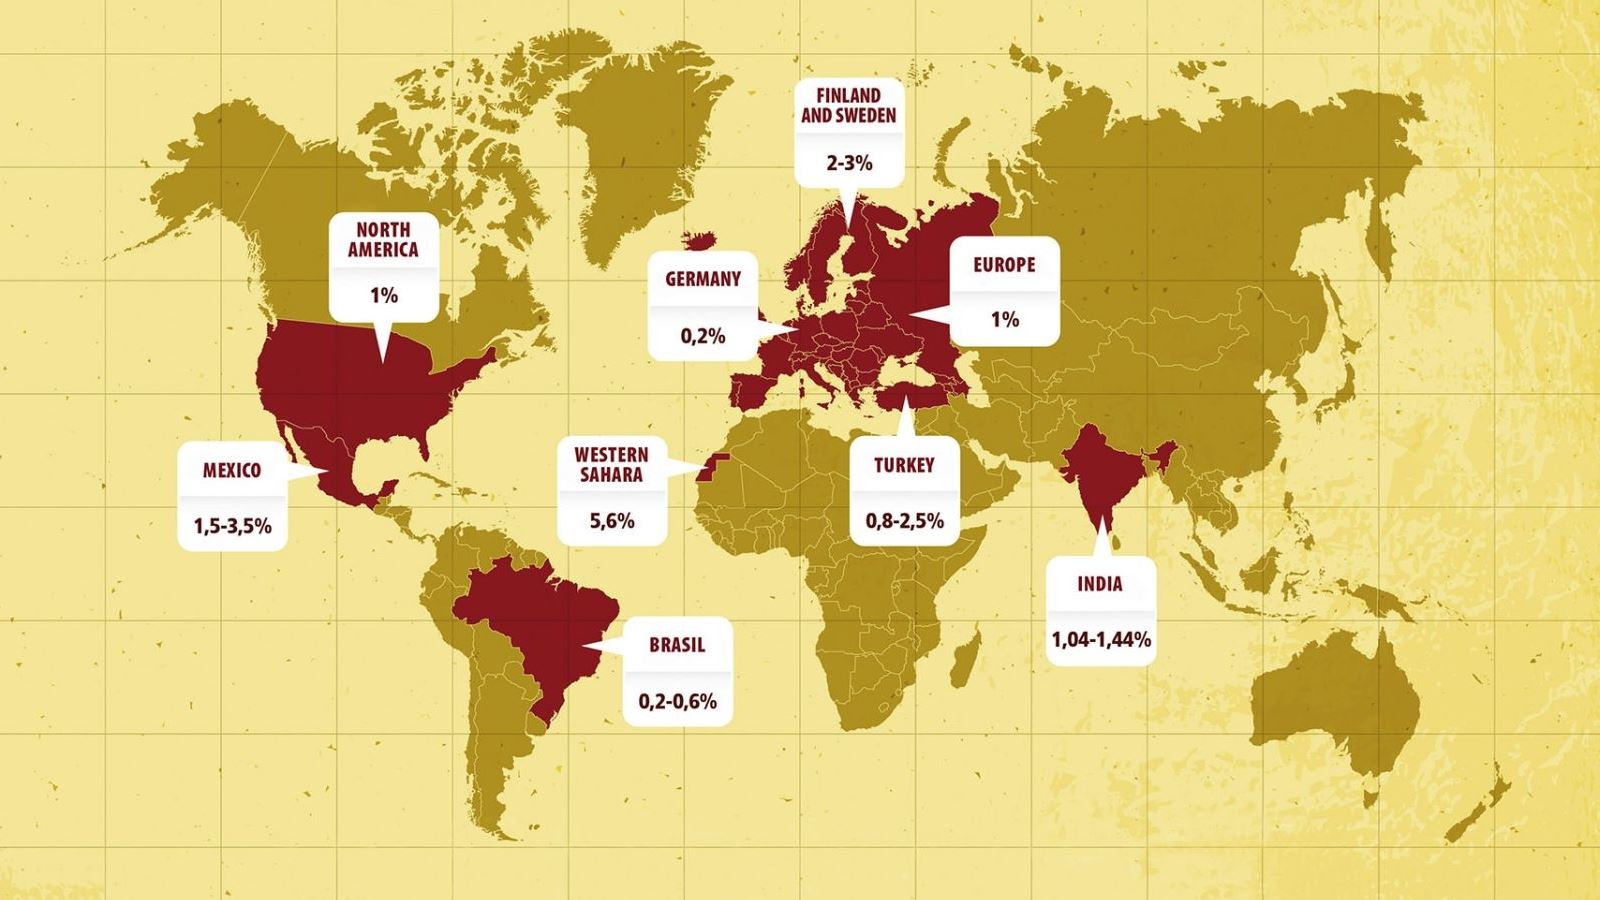 schaer_global-map_tradenews_en_1600_2015_12_02.jpg